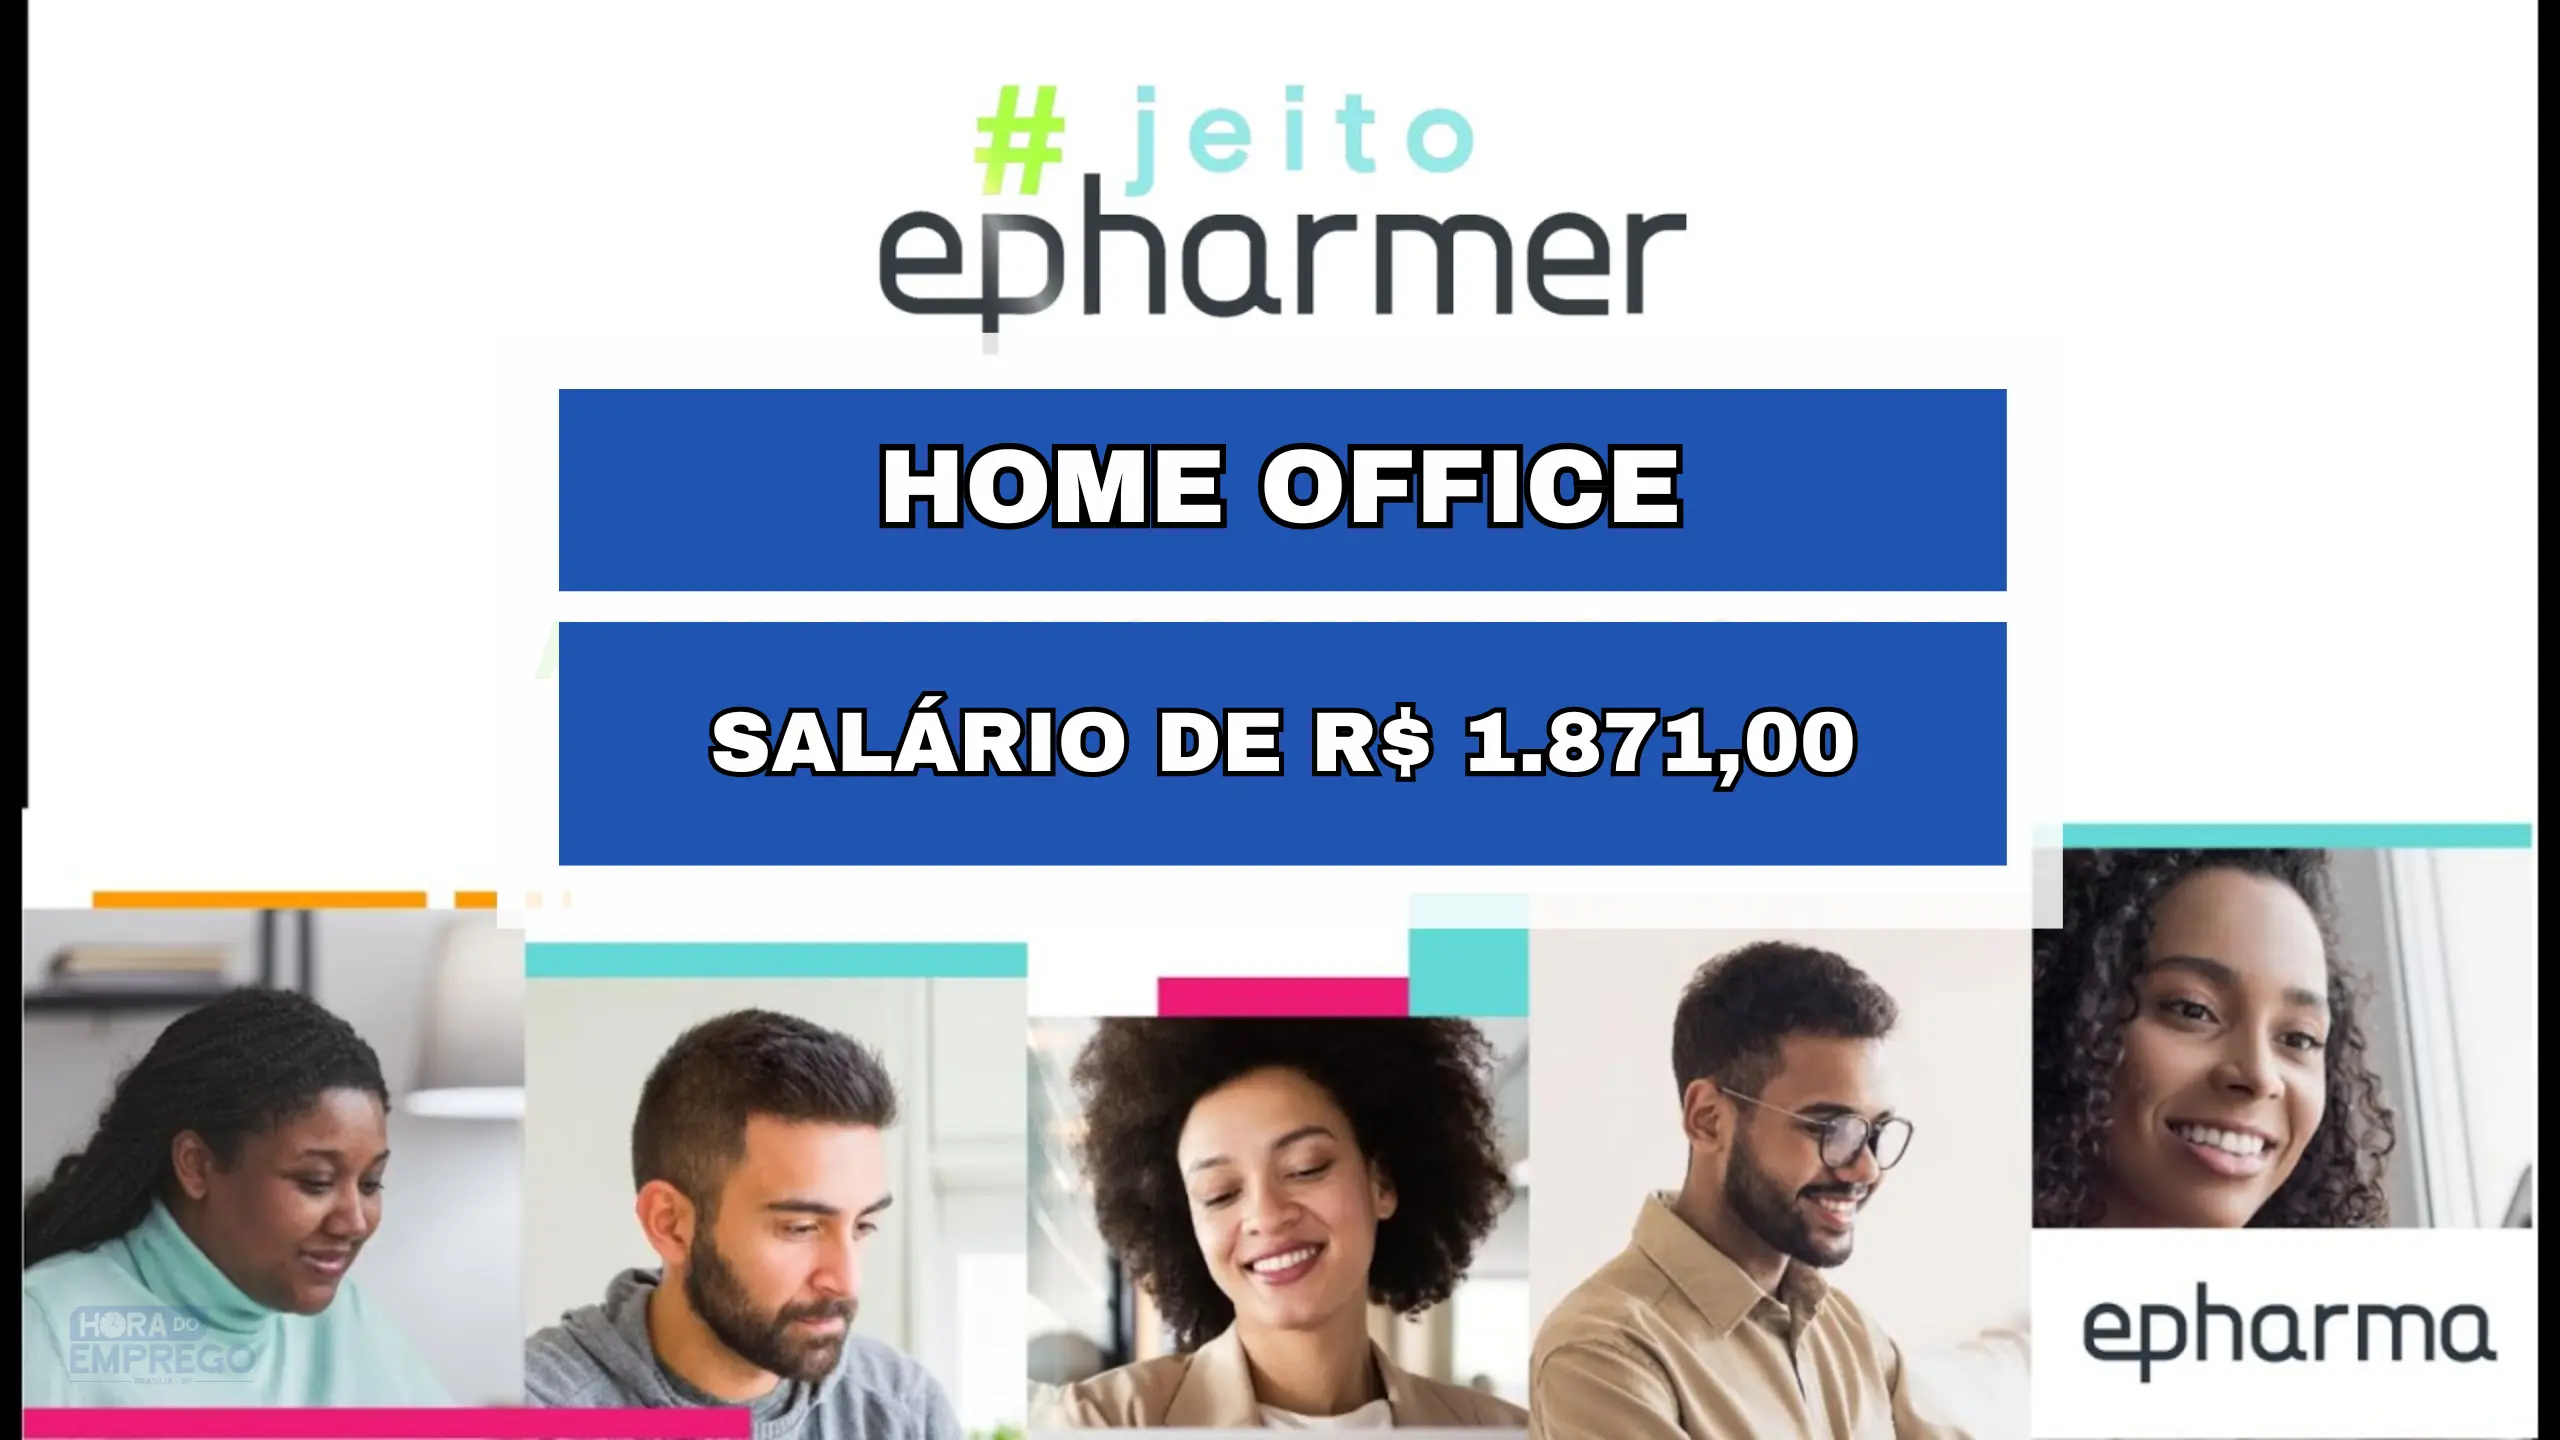 Trabalhe de Casa! Epharmer abriu vagas HOME OFFICE com salário de R$ 1.871,00 para Assistente de Relacionamento